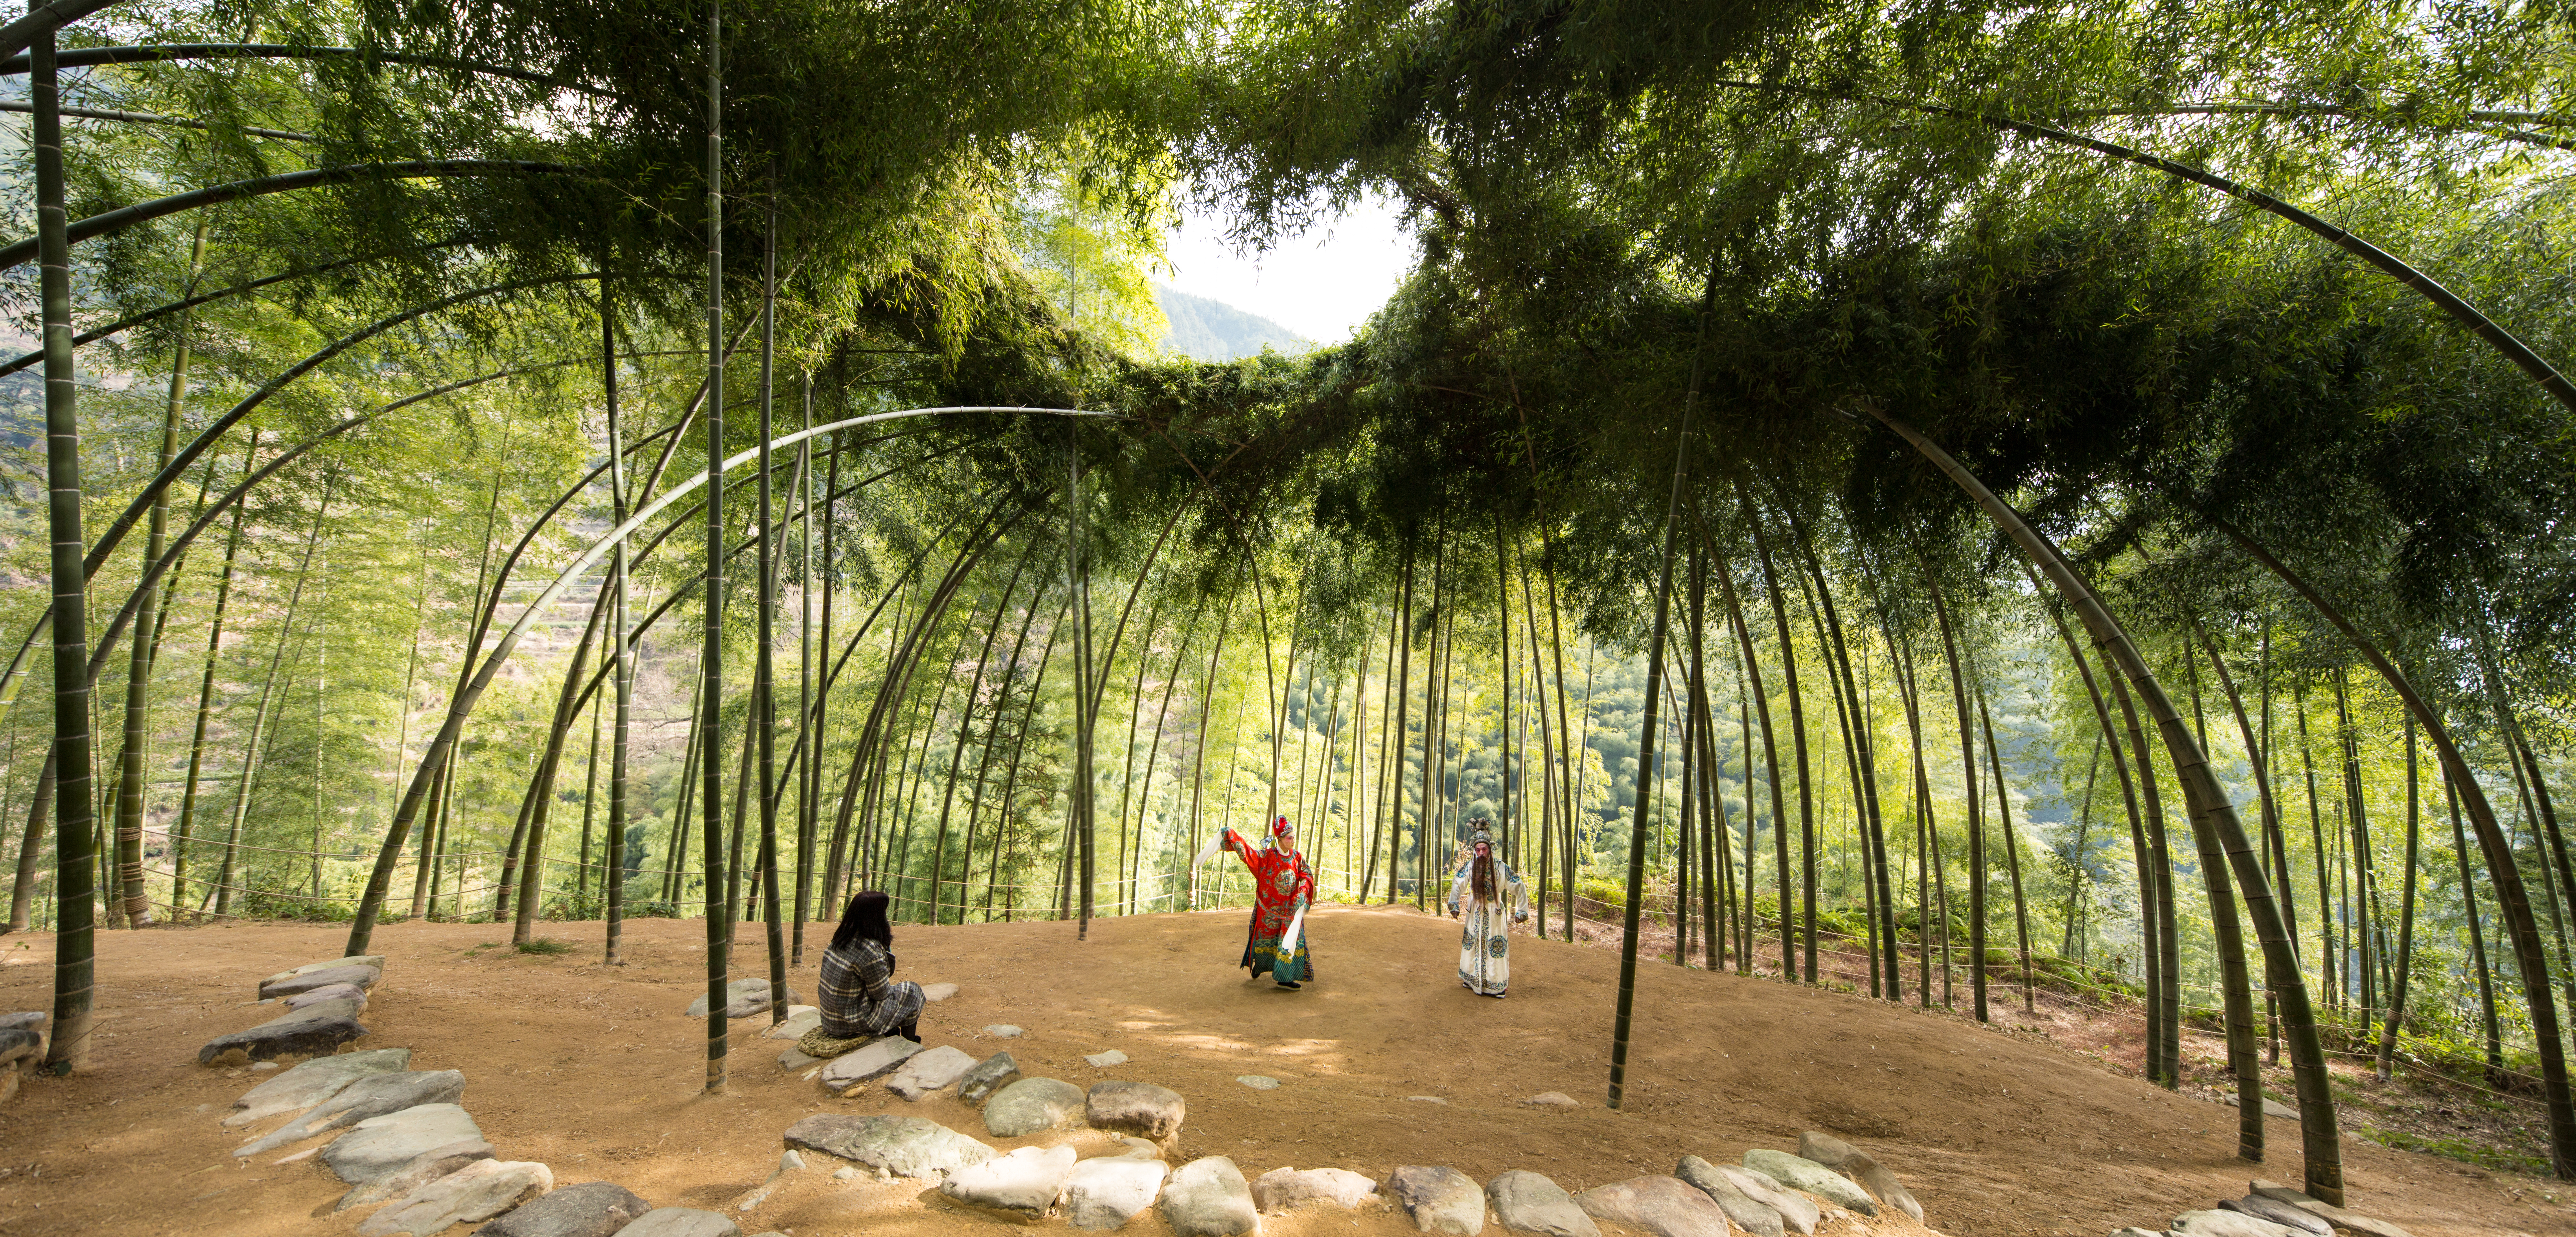 Hoopvolle toekomst op expo ‘nature’ in designmuseum cube